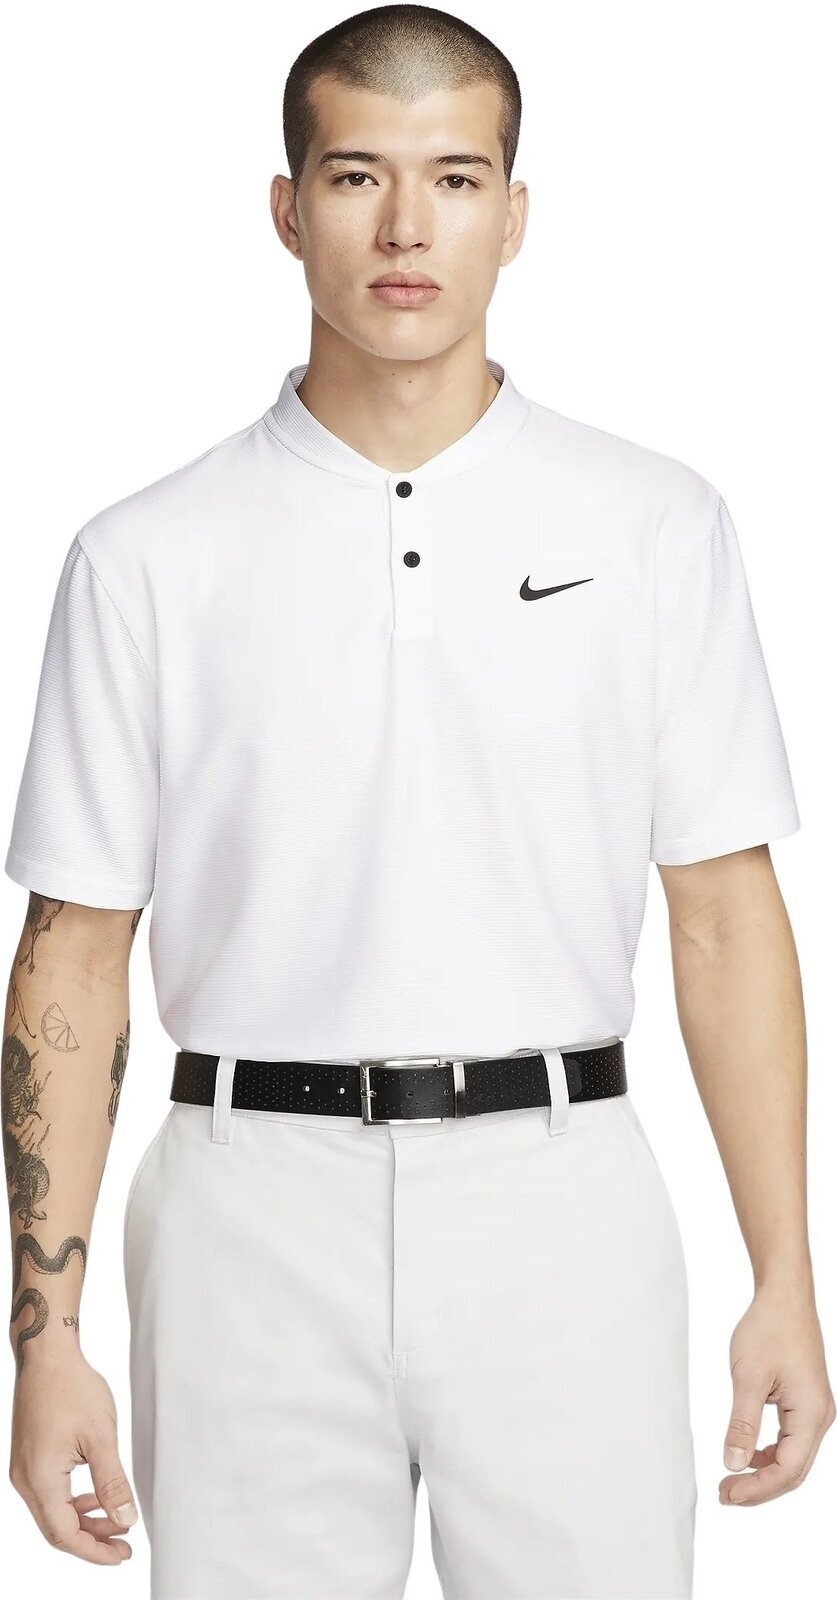 Polo majica Nike Dri-Fit Victory Texture Mens Polo White/Black L